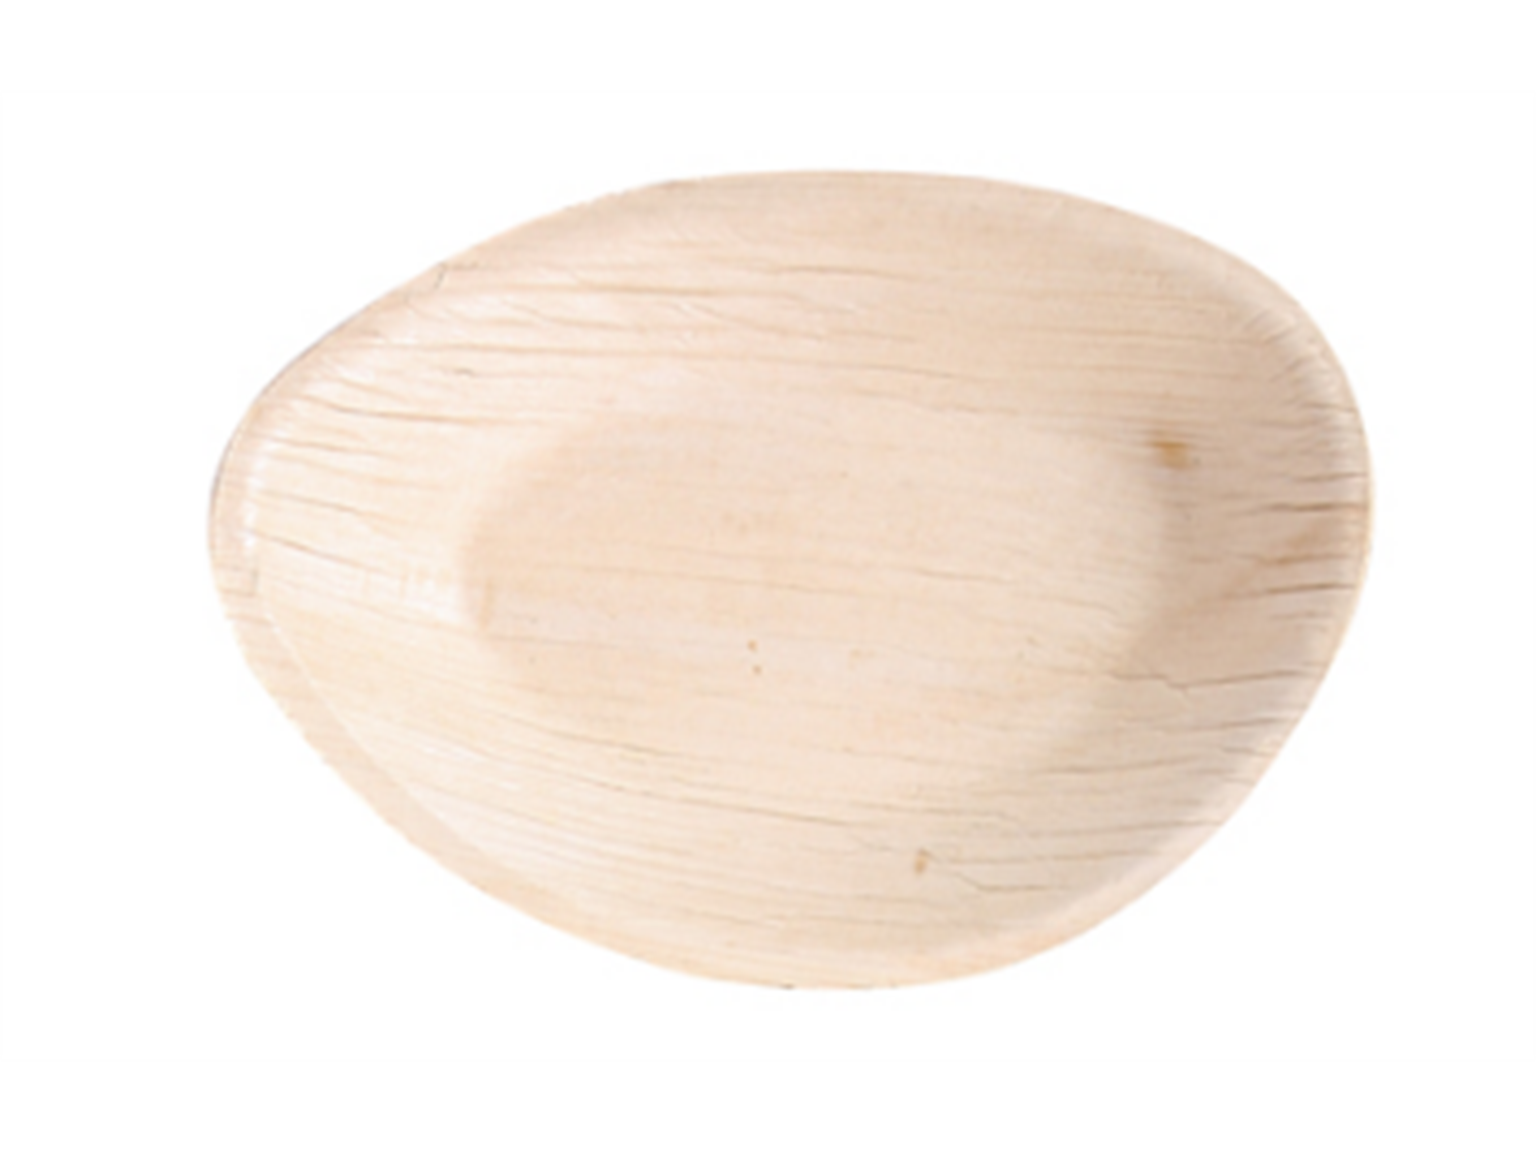 PLATTE PALMBLATT  oval, 17 x 12 x 1.8 cm